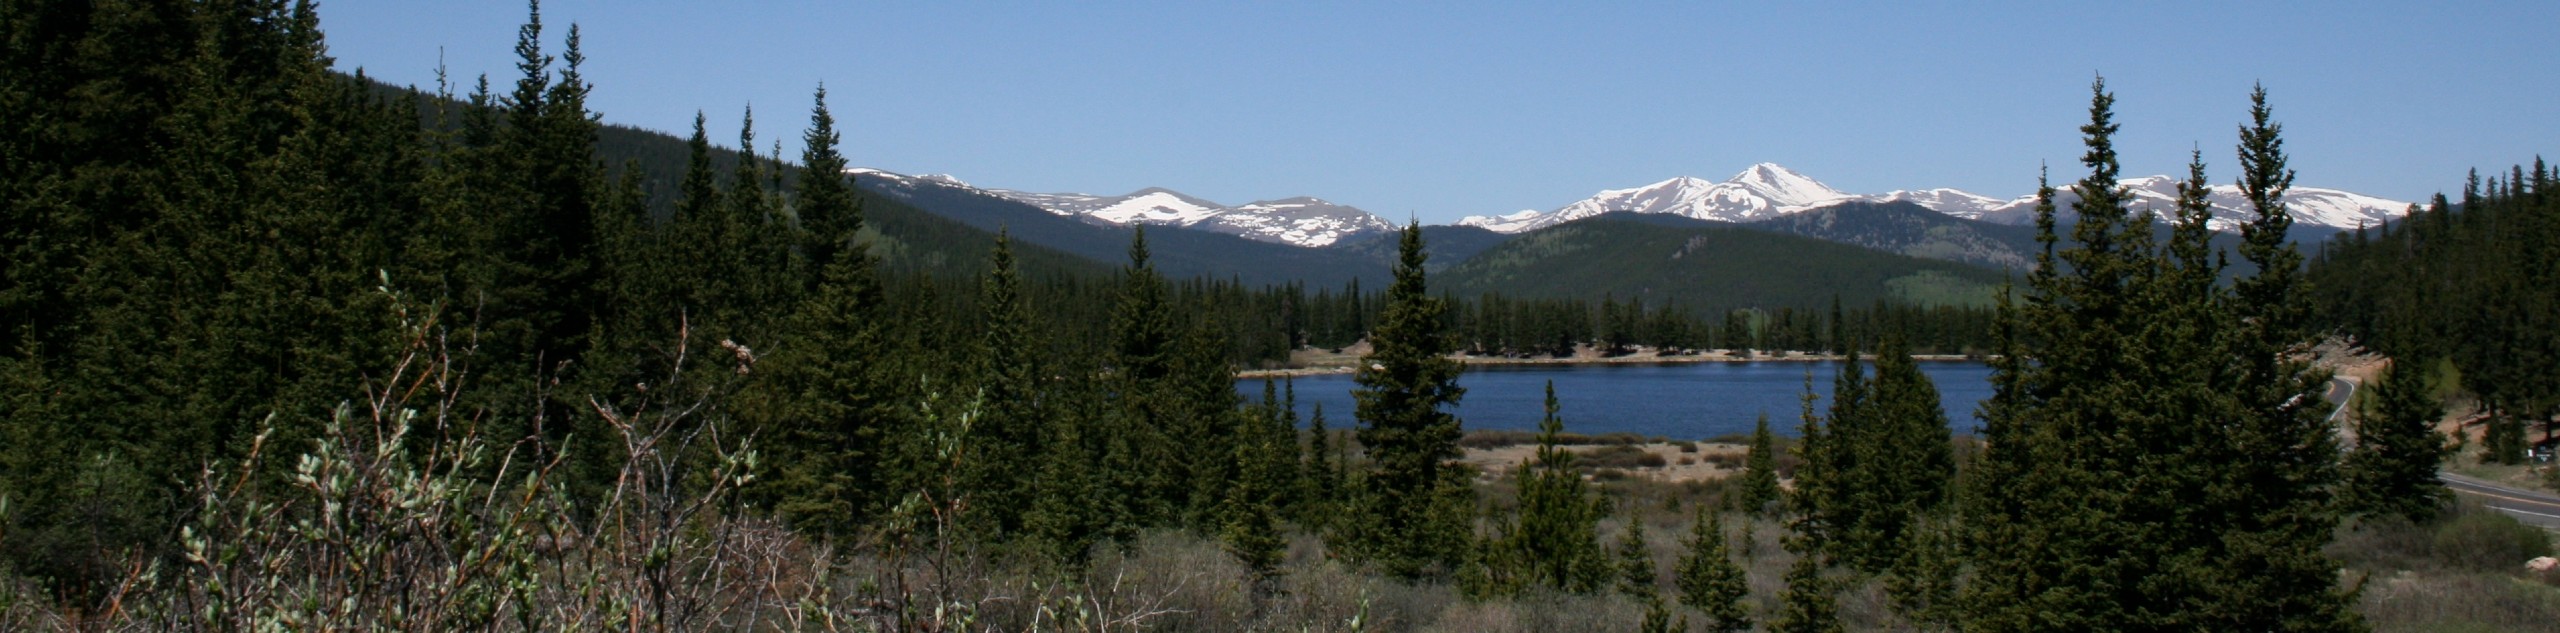 Echo Lake Trail